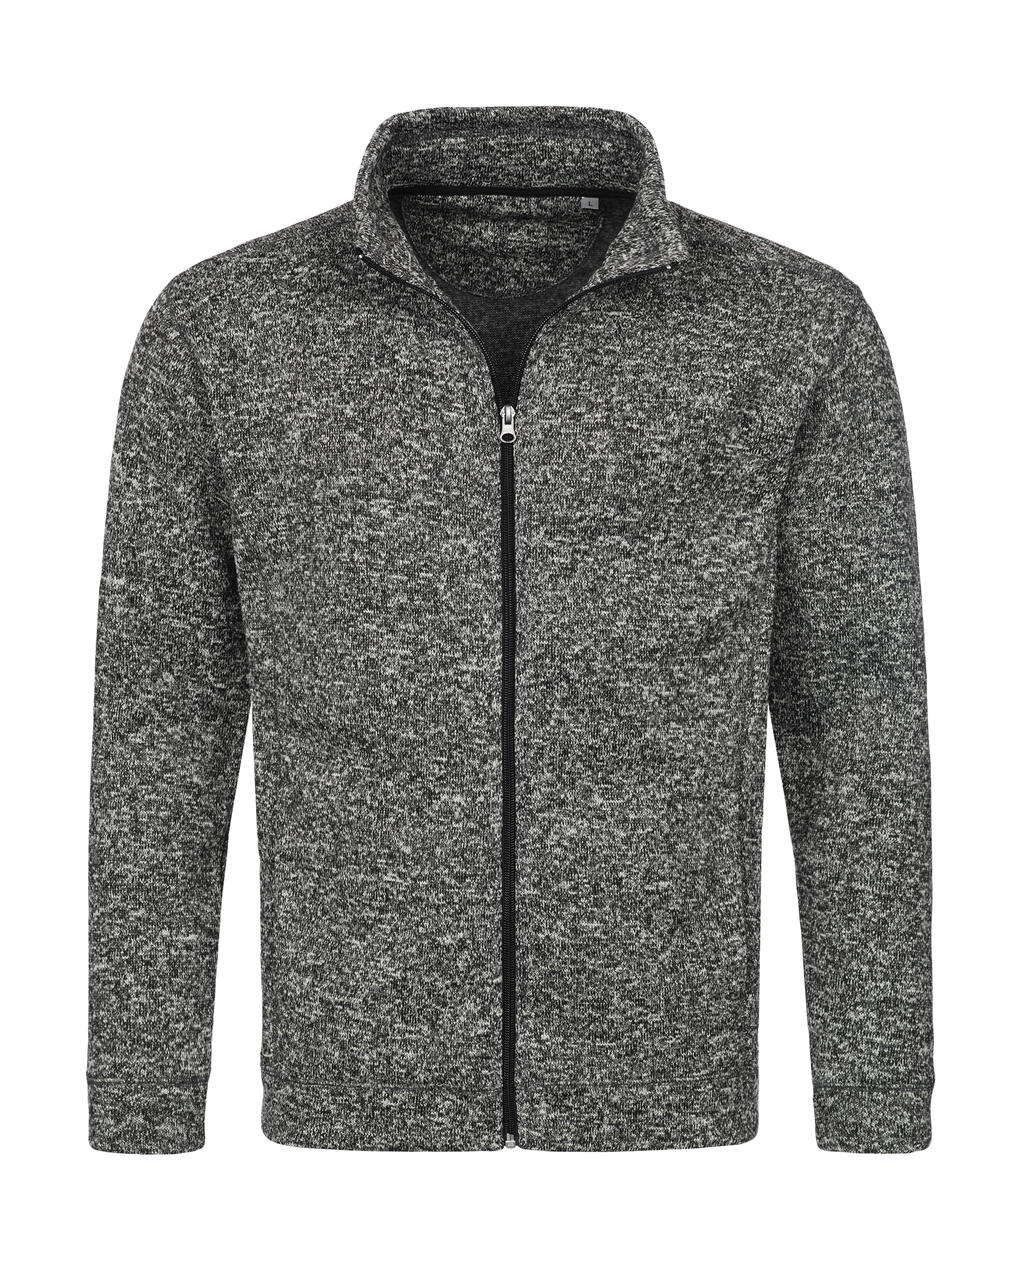  Knit Fleece Jacket in Farbe Dark Grey Melange